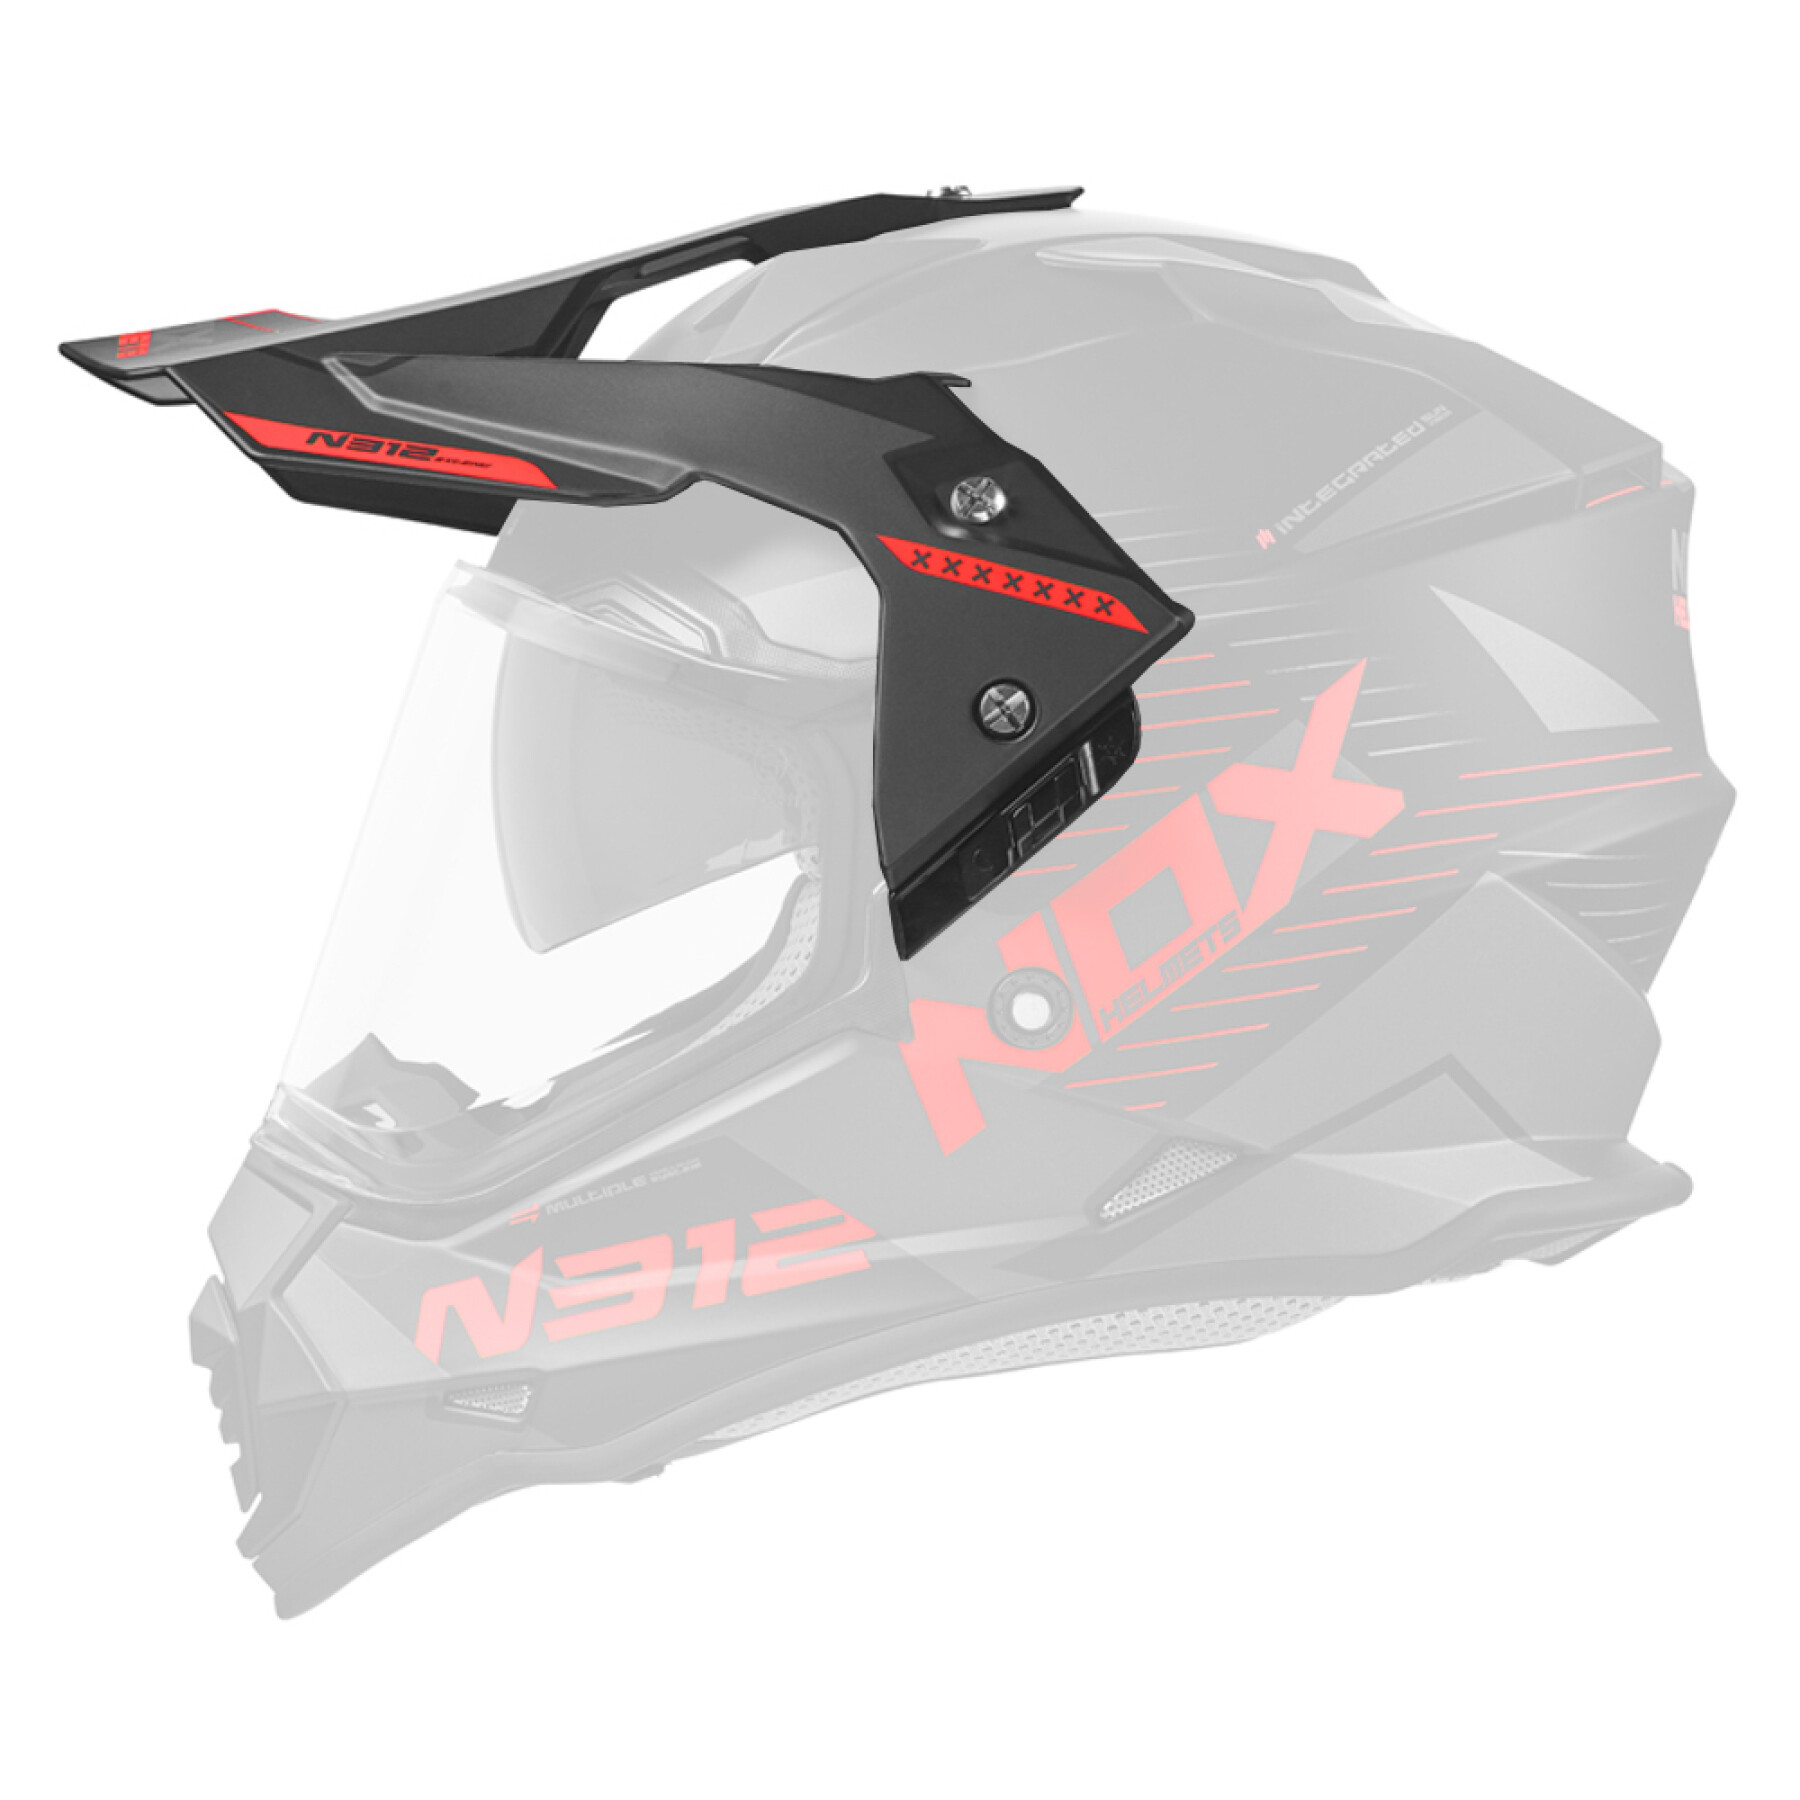 Viseira para capacete de motocross Nox 312 Extend